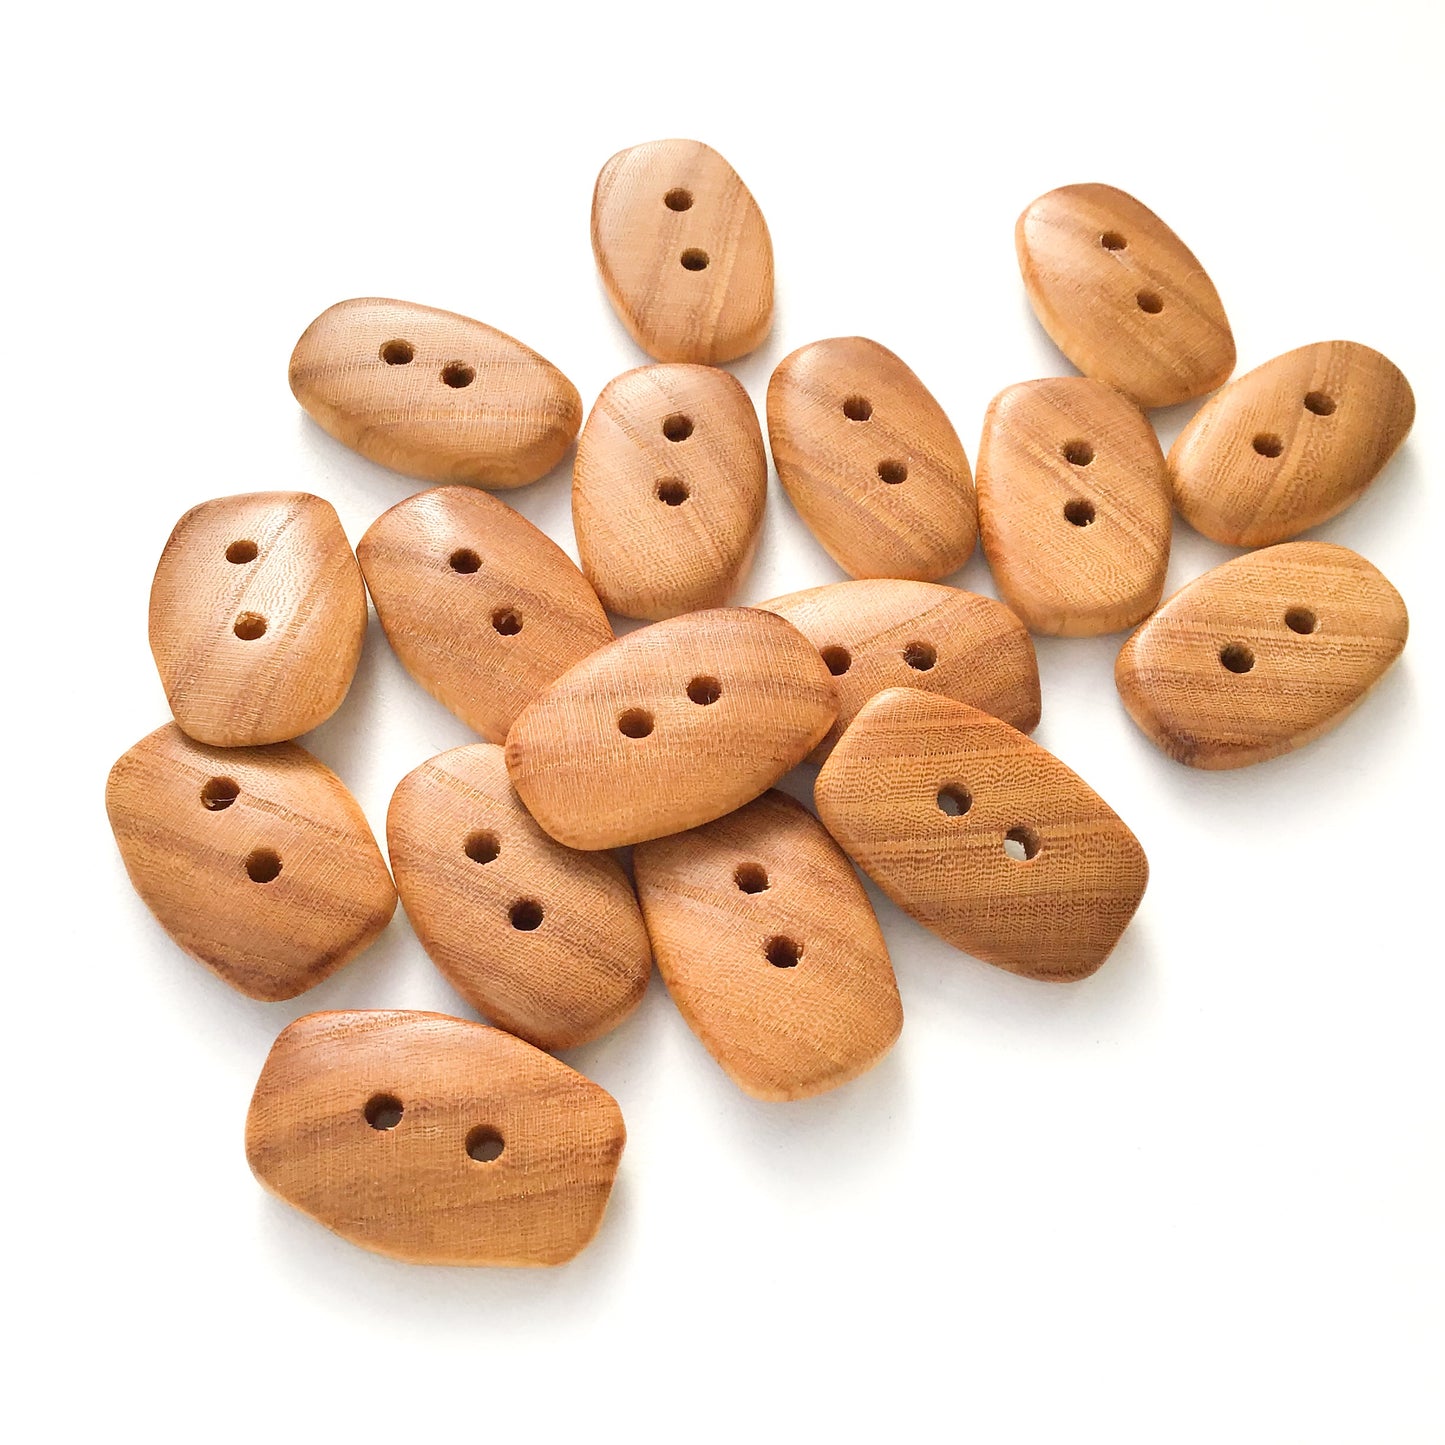 American Elm Wood Buttons - Rectangular Wood Buttons - 3/8" x 1  1/16"